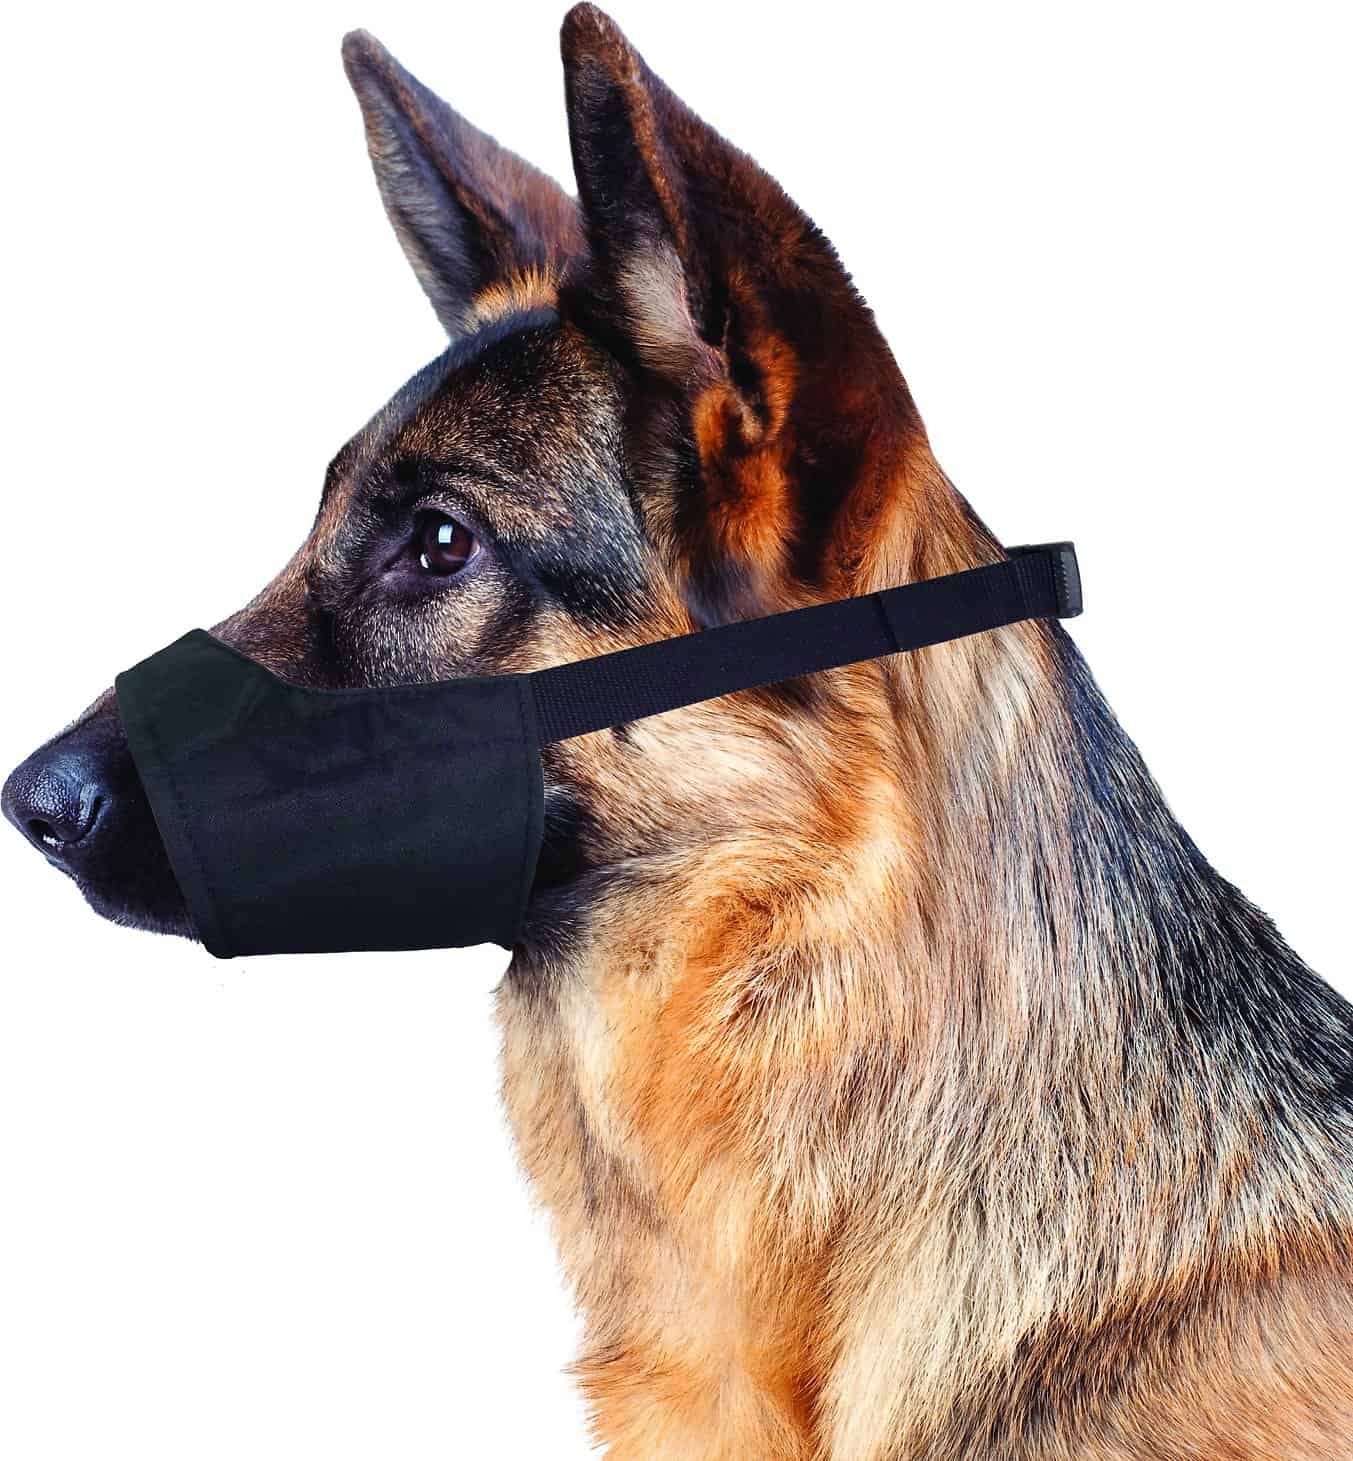 best dog muzzle